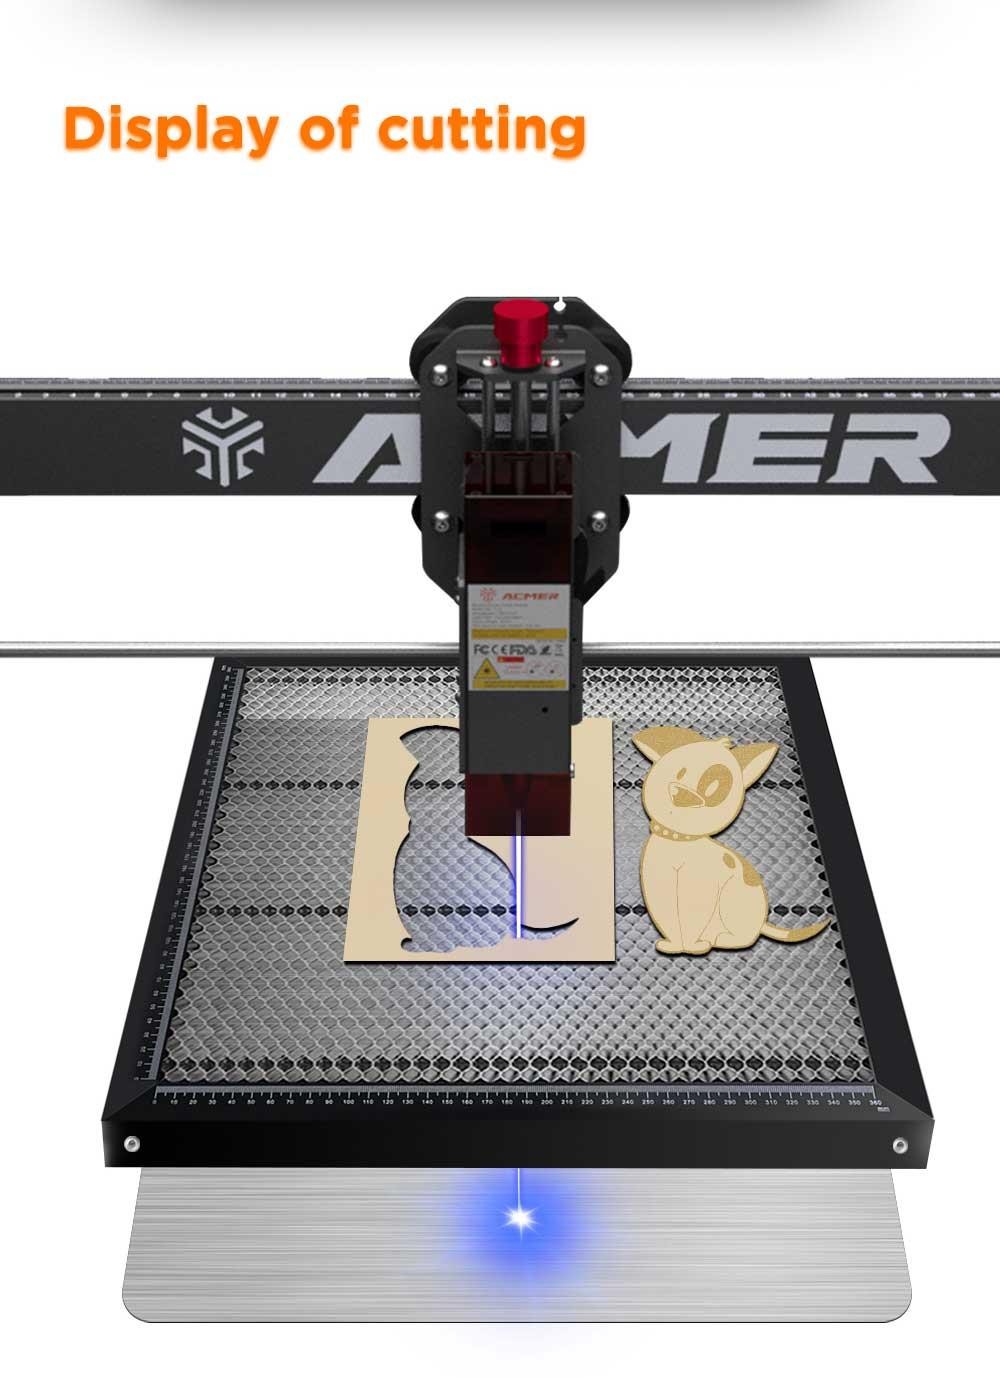 ACMER-E10 440mm*440mm Laser Engraving Table